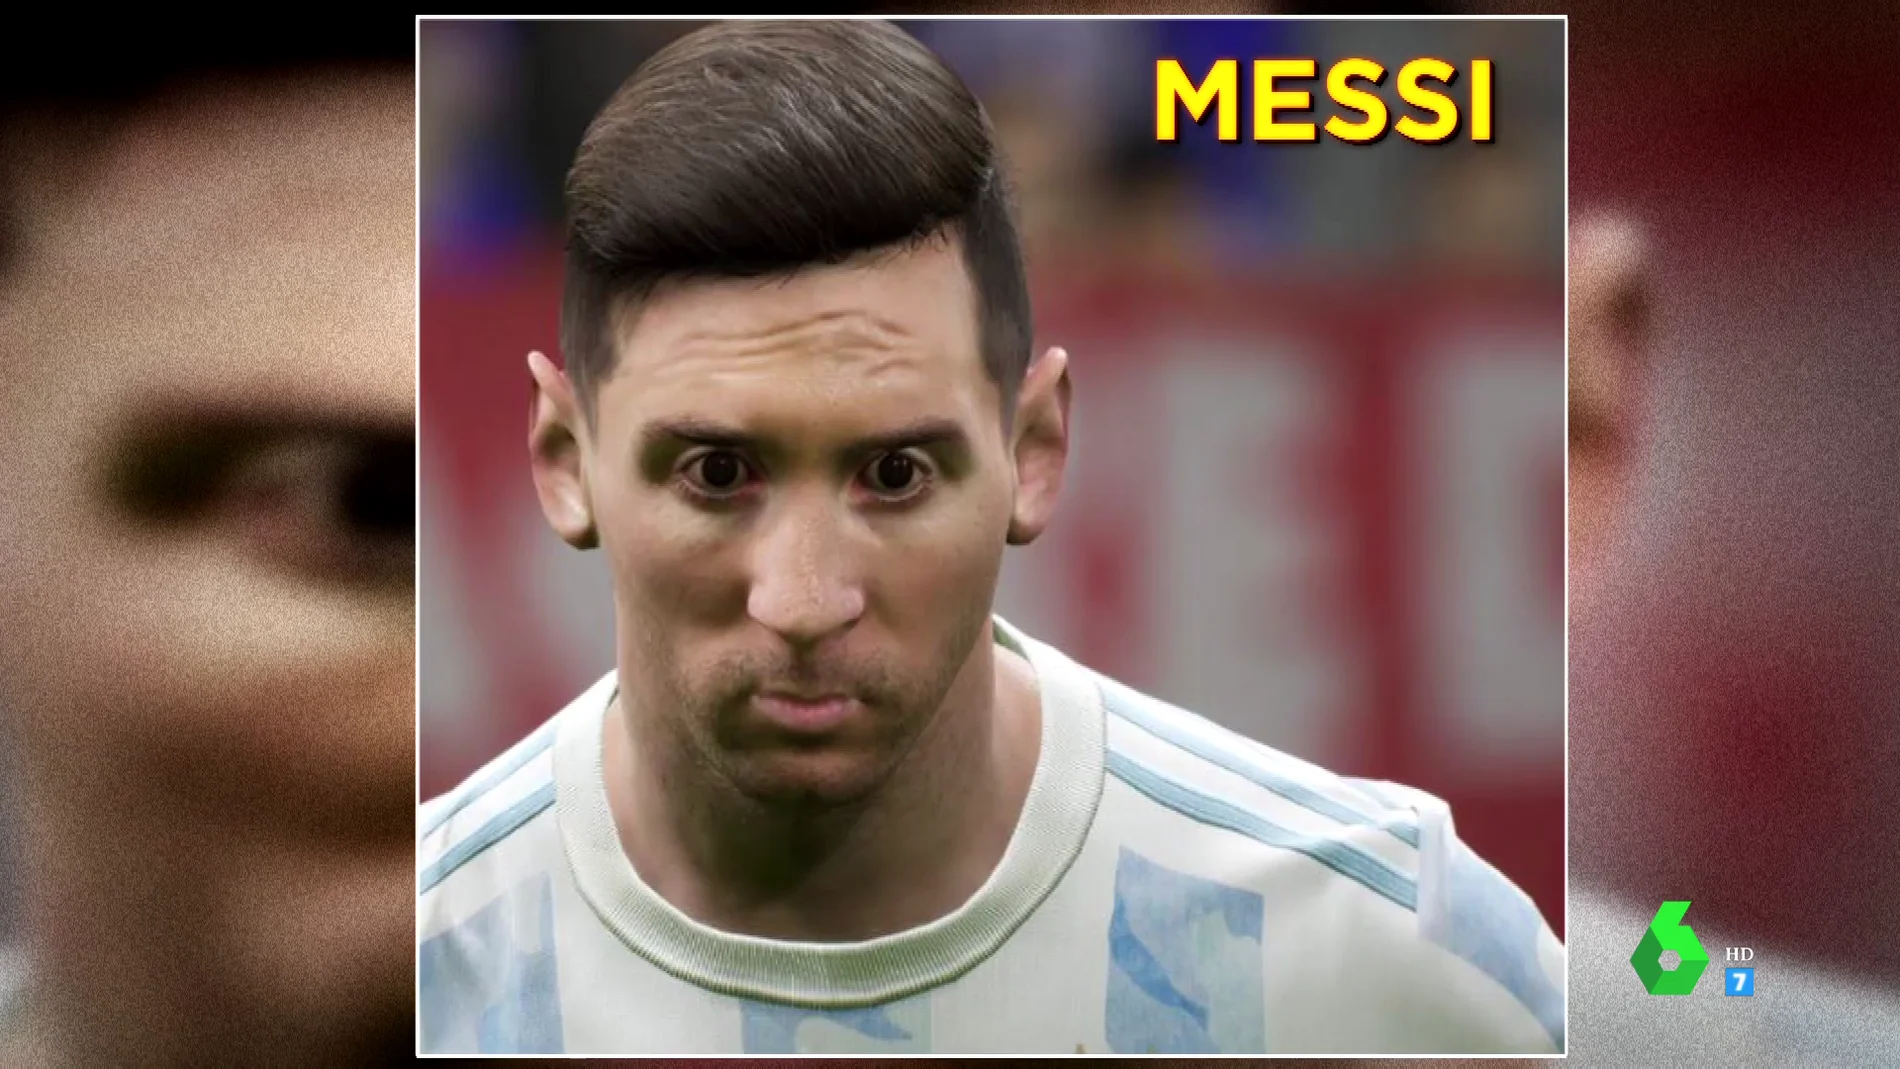 Imagen de Messi en un videojuego